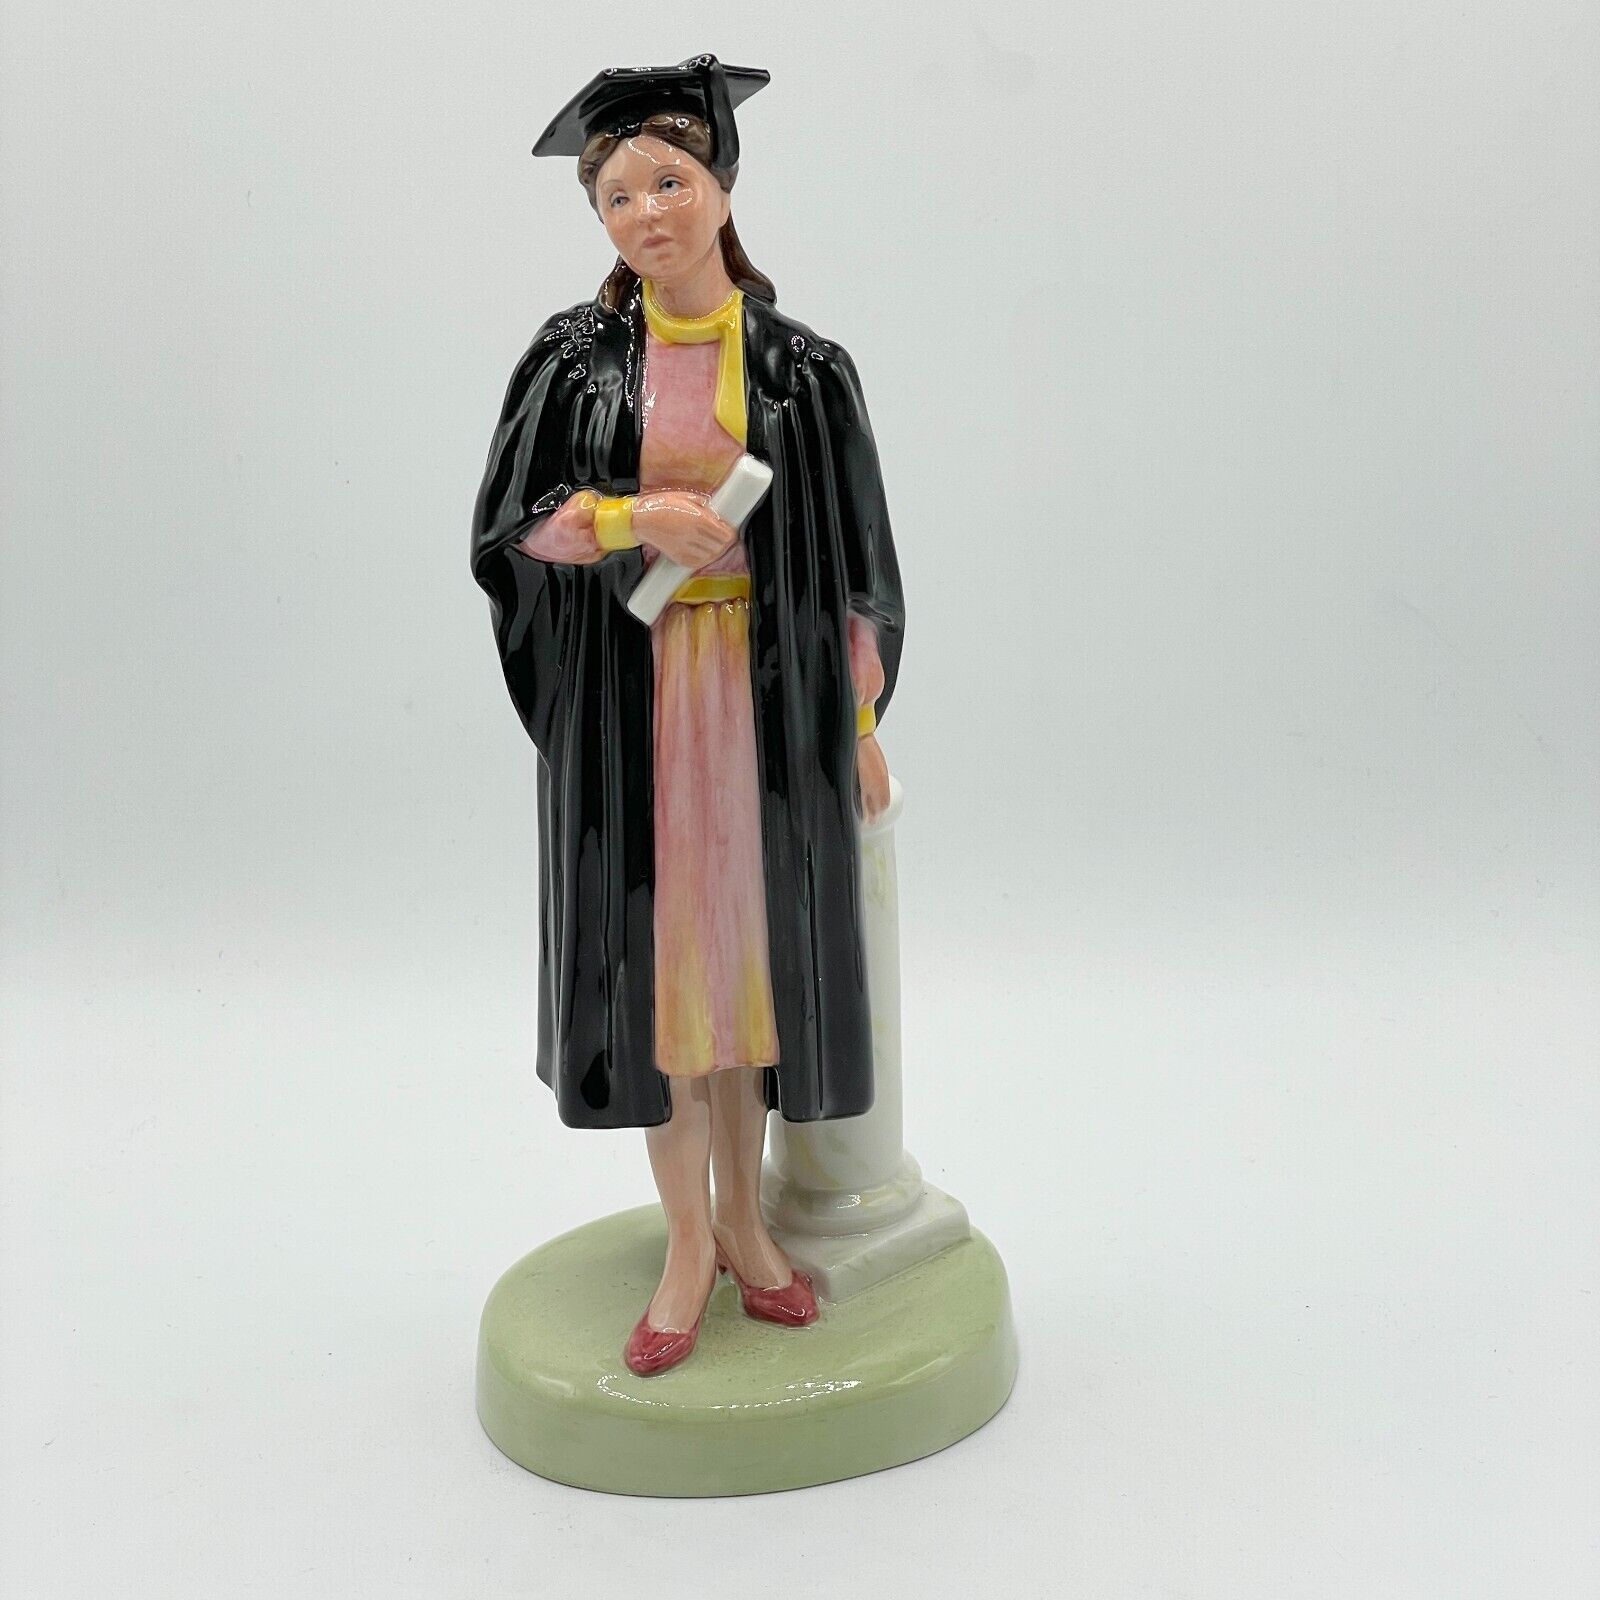 Vintage Royal Doulton “The Graduate” Female Figurine 1983 P. Parsons HN3016